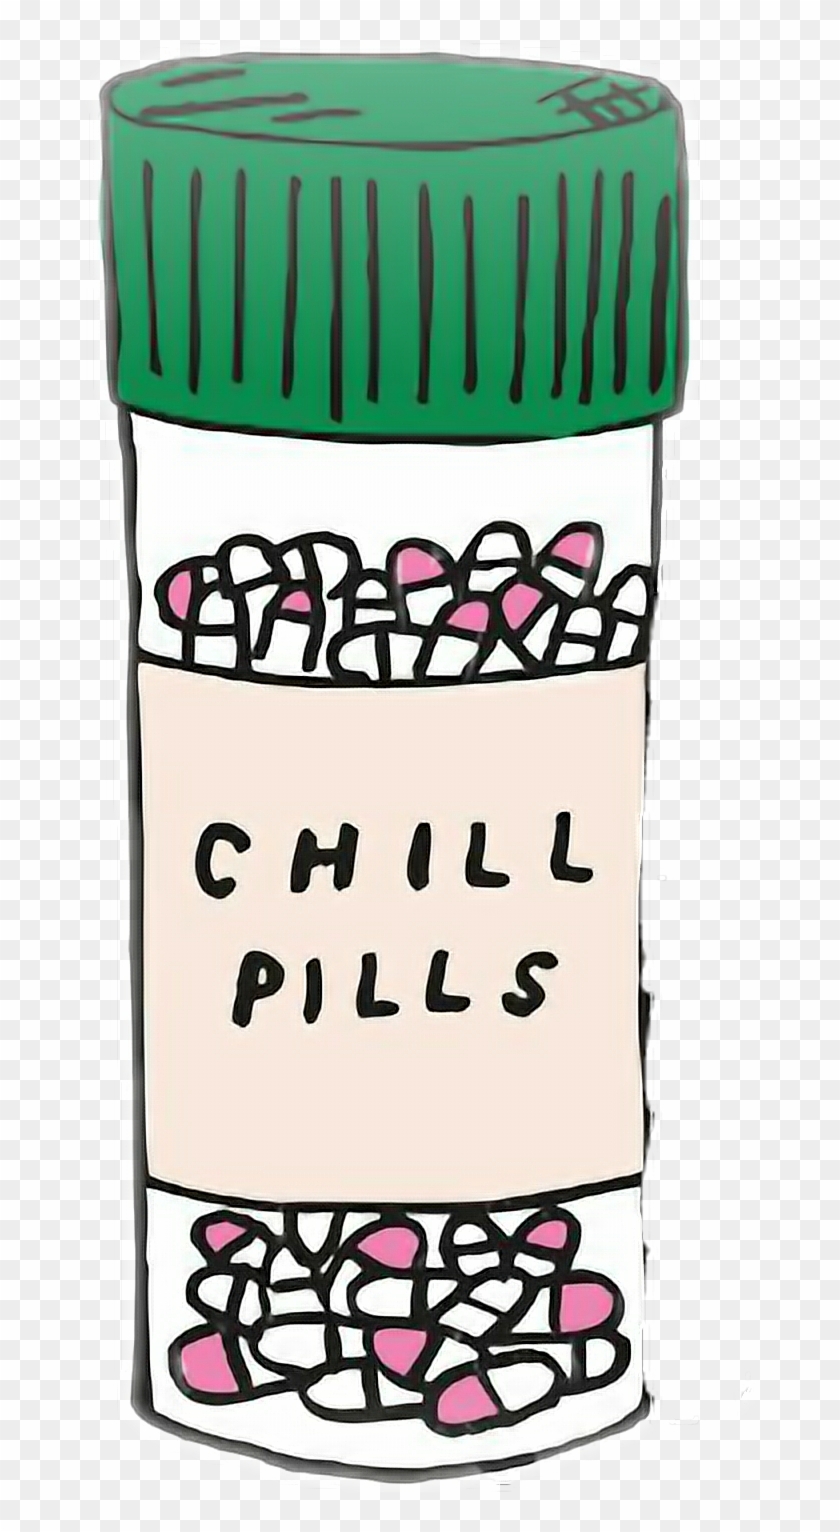 #chillpills #tumblr #cute #pastillas - Chill Pills Drawing Clipart